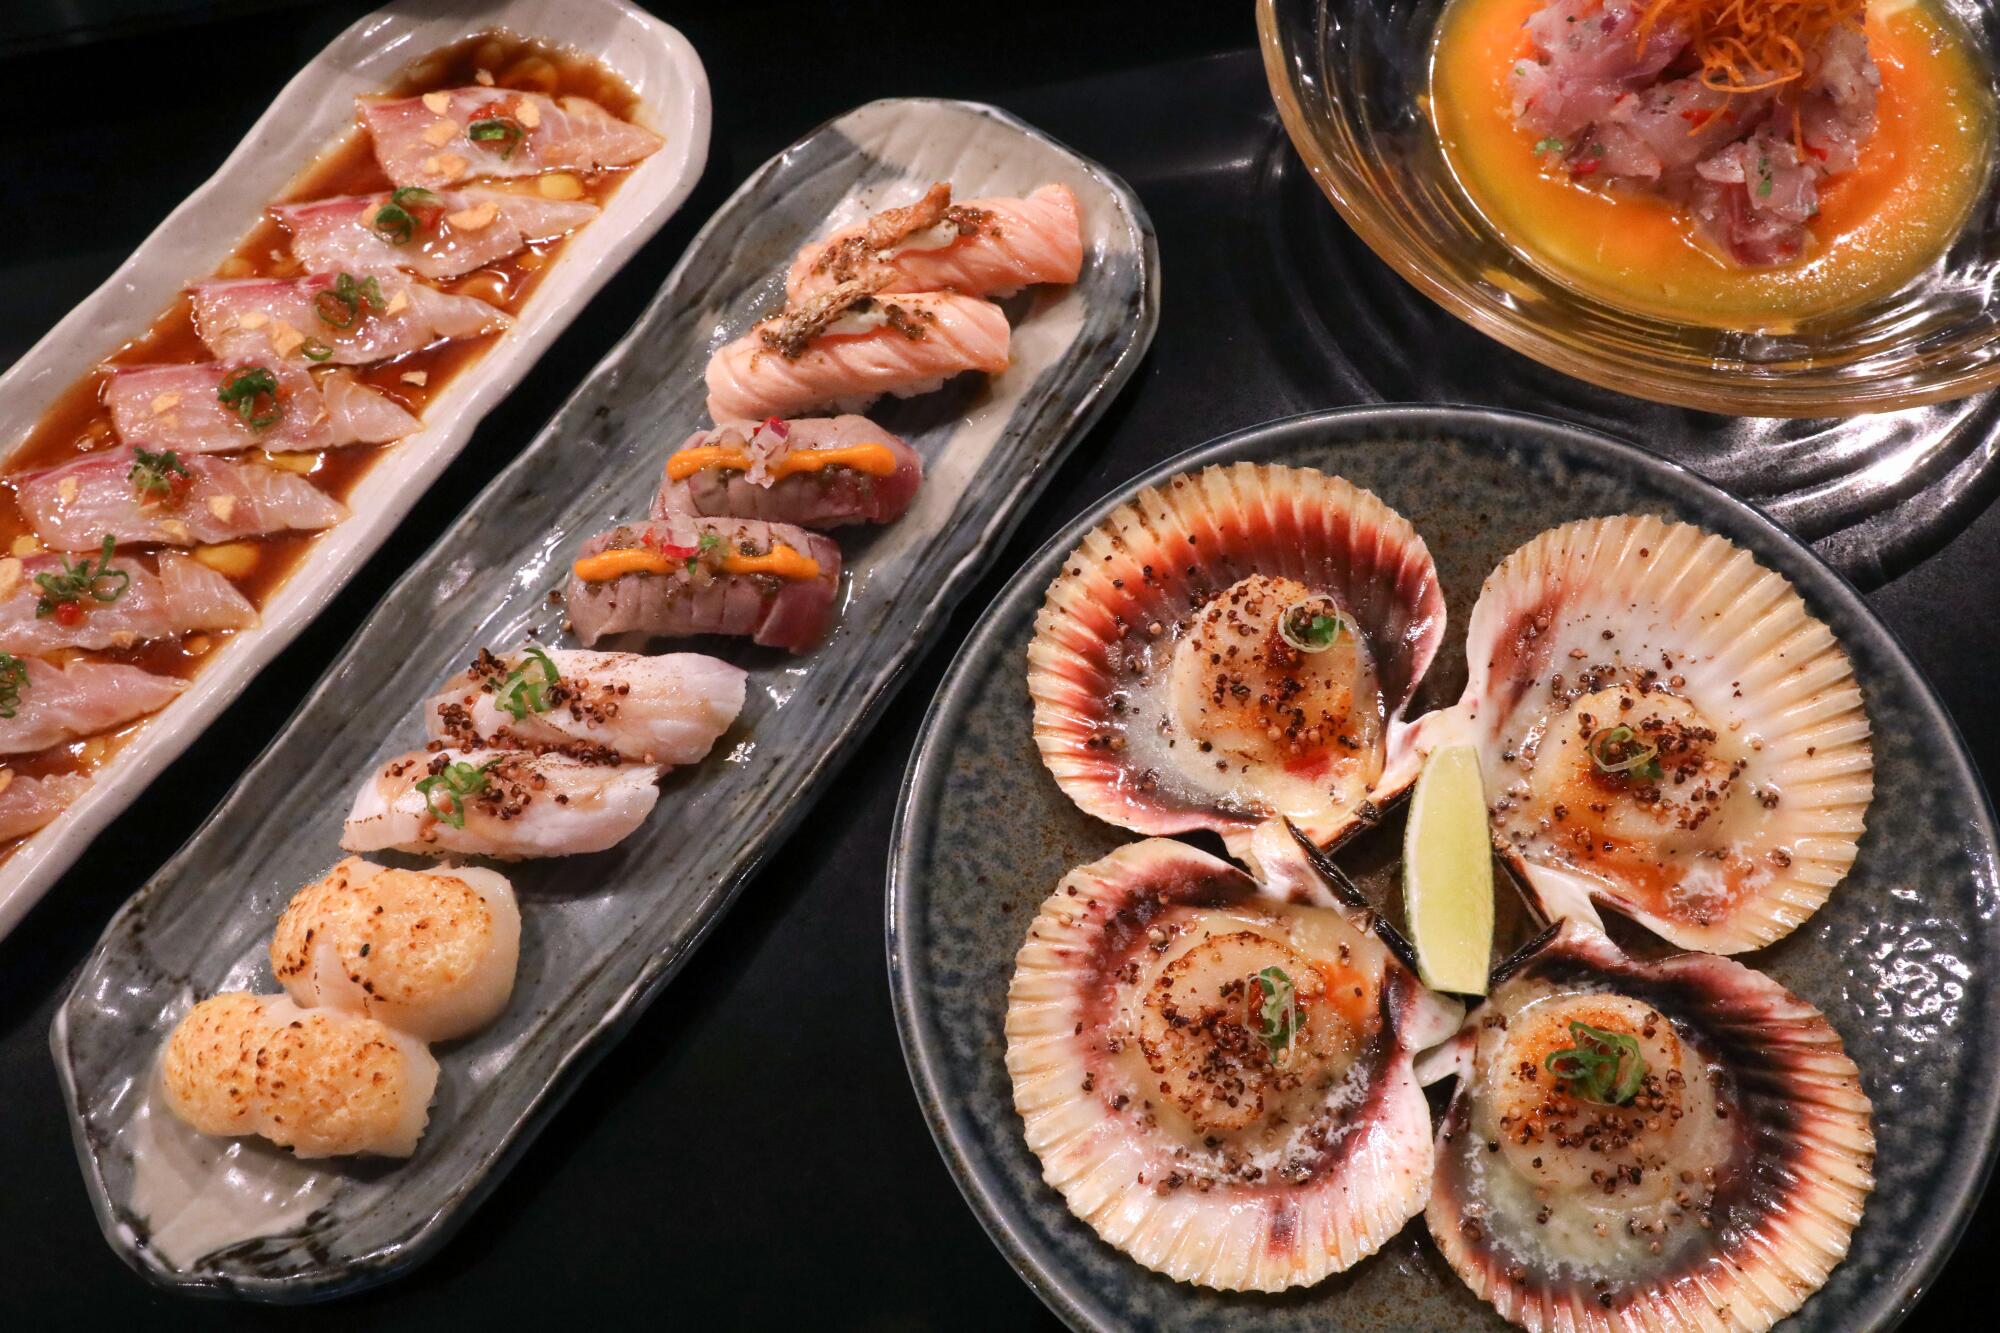 Cuatro platos, incluido sushi y vieiras abiertas.